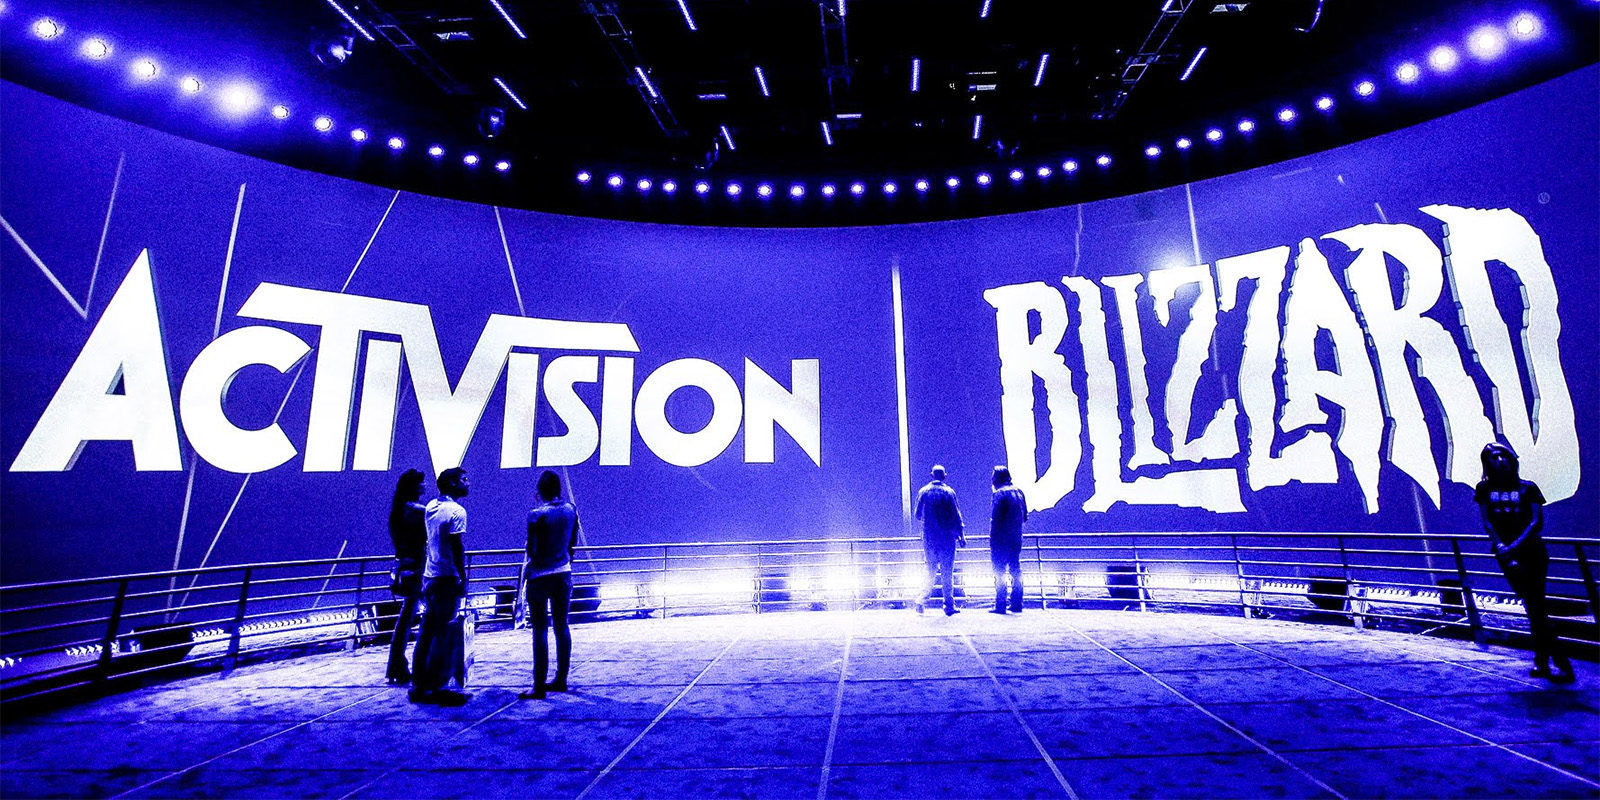 Activision Blizzard generó 4.000 millones de dólares en 2017 gracias a los micropagos